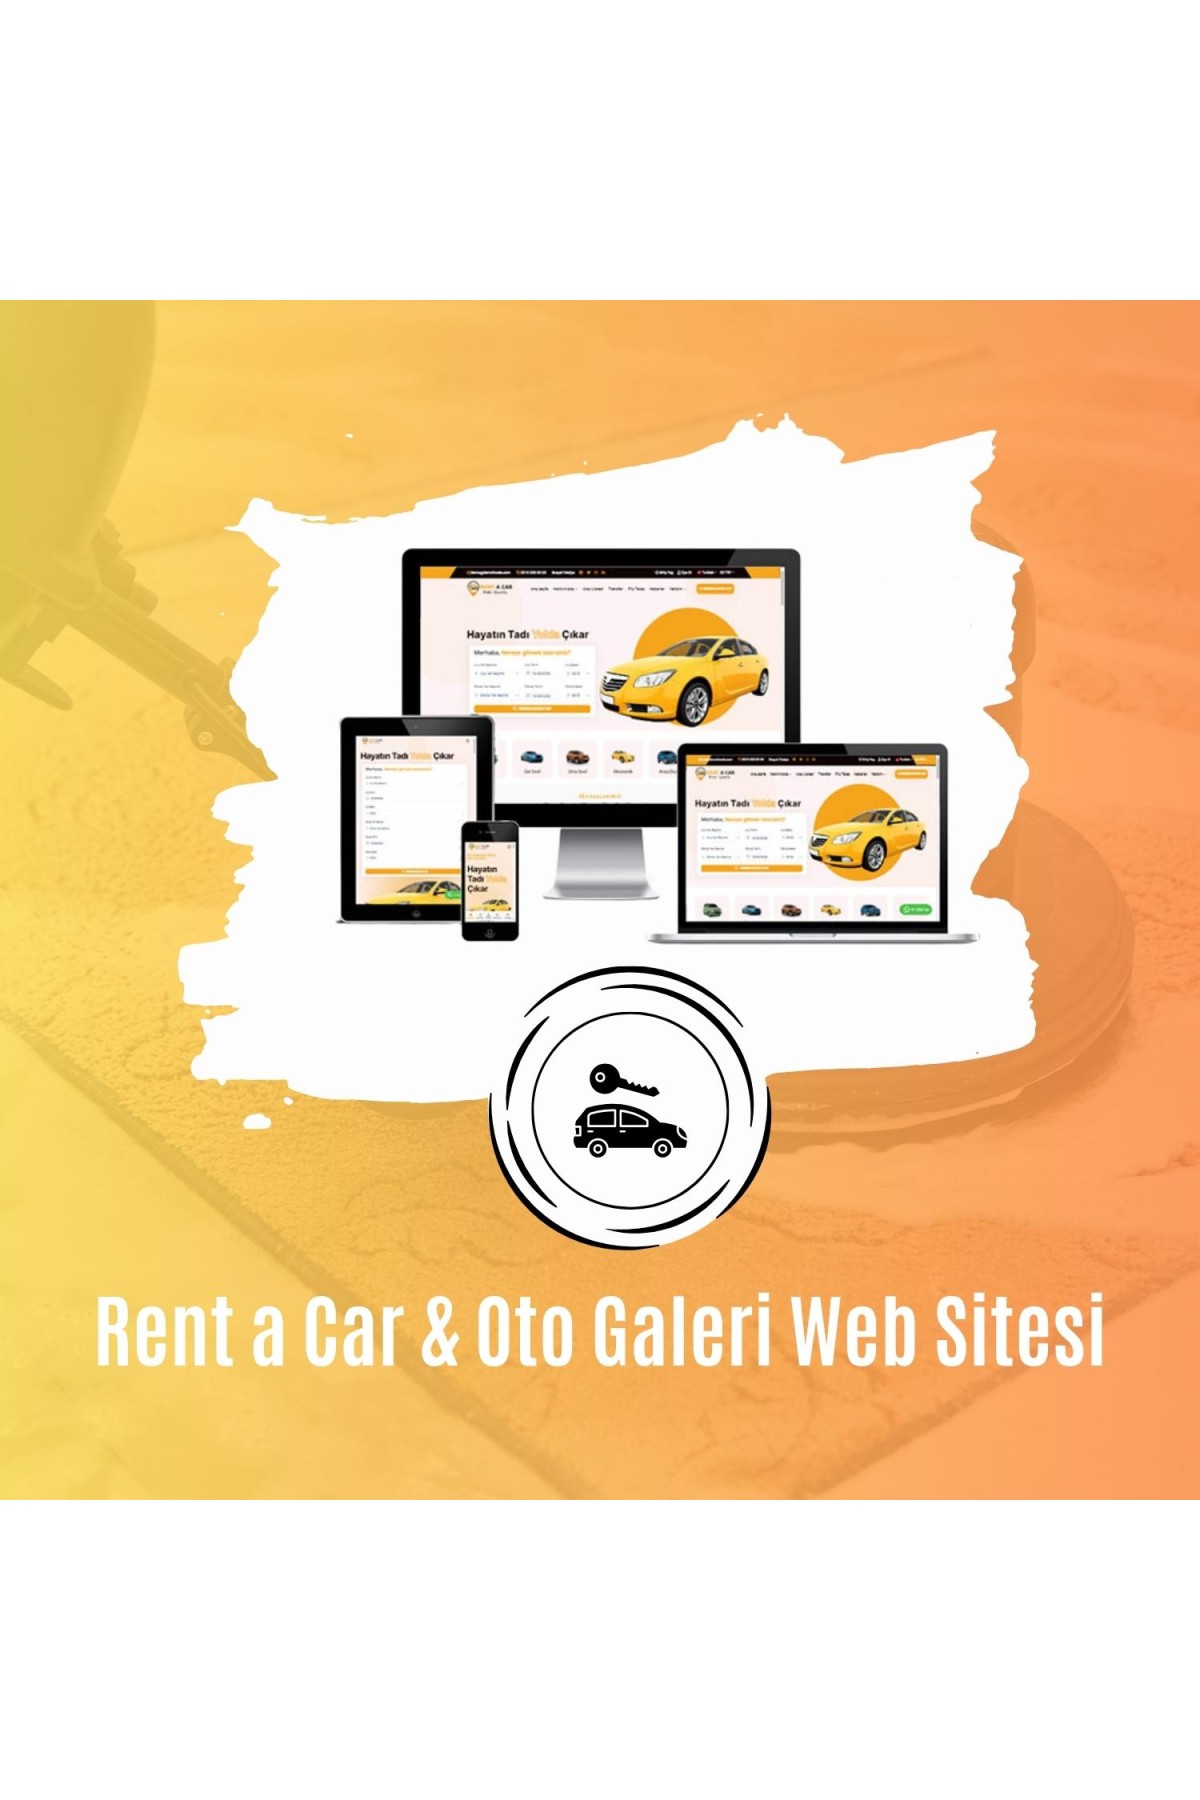 Rent a Car & Oto Galeri Web Sitesi Tasarımı